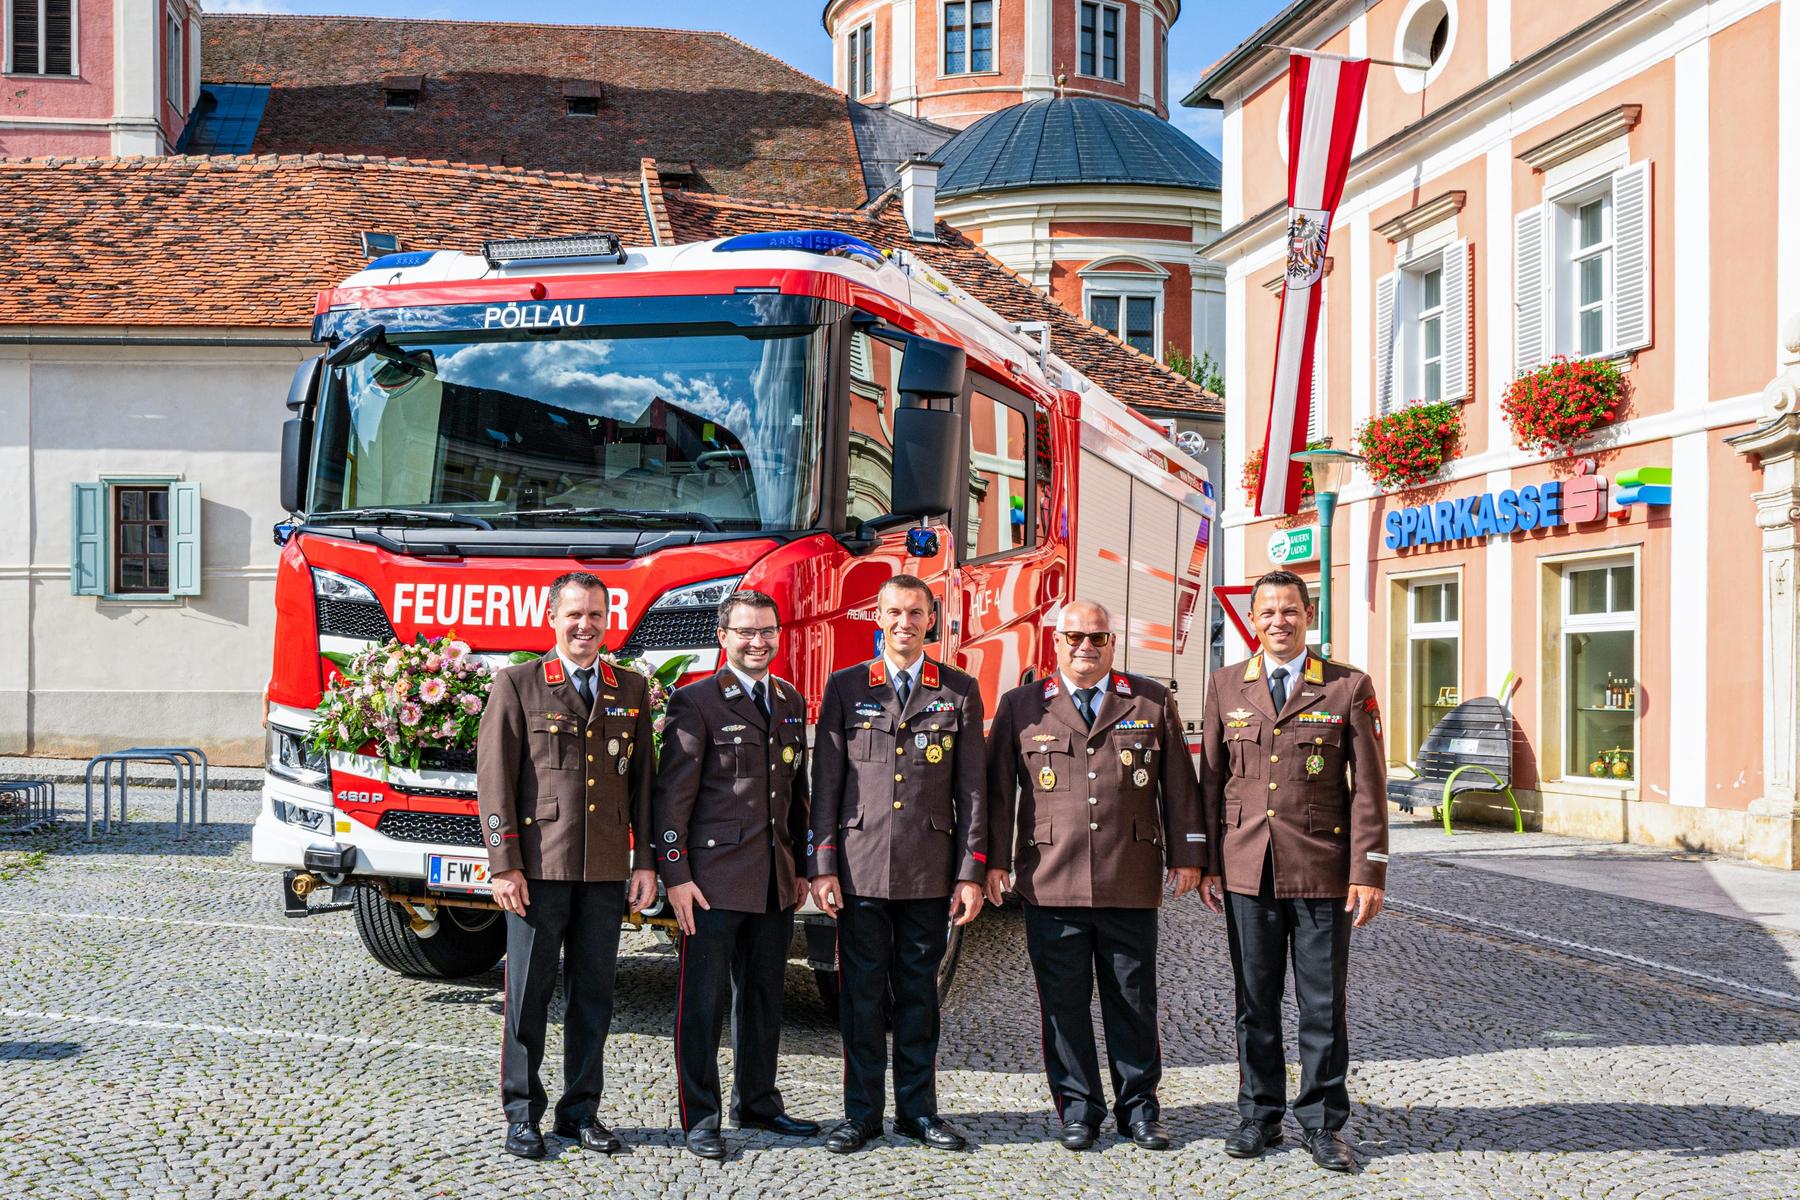 Fotos, Fotos, Fotos!: Feuerwehr Pöllau feierte 150-jähriges Bestehen